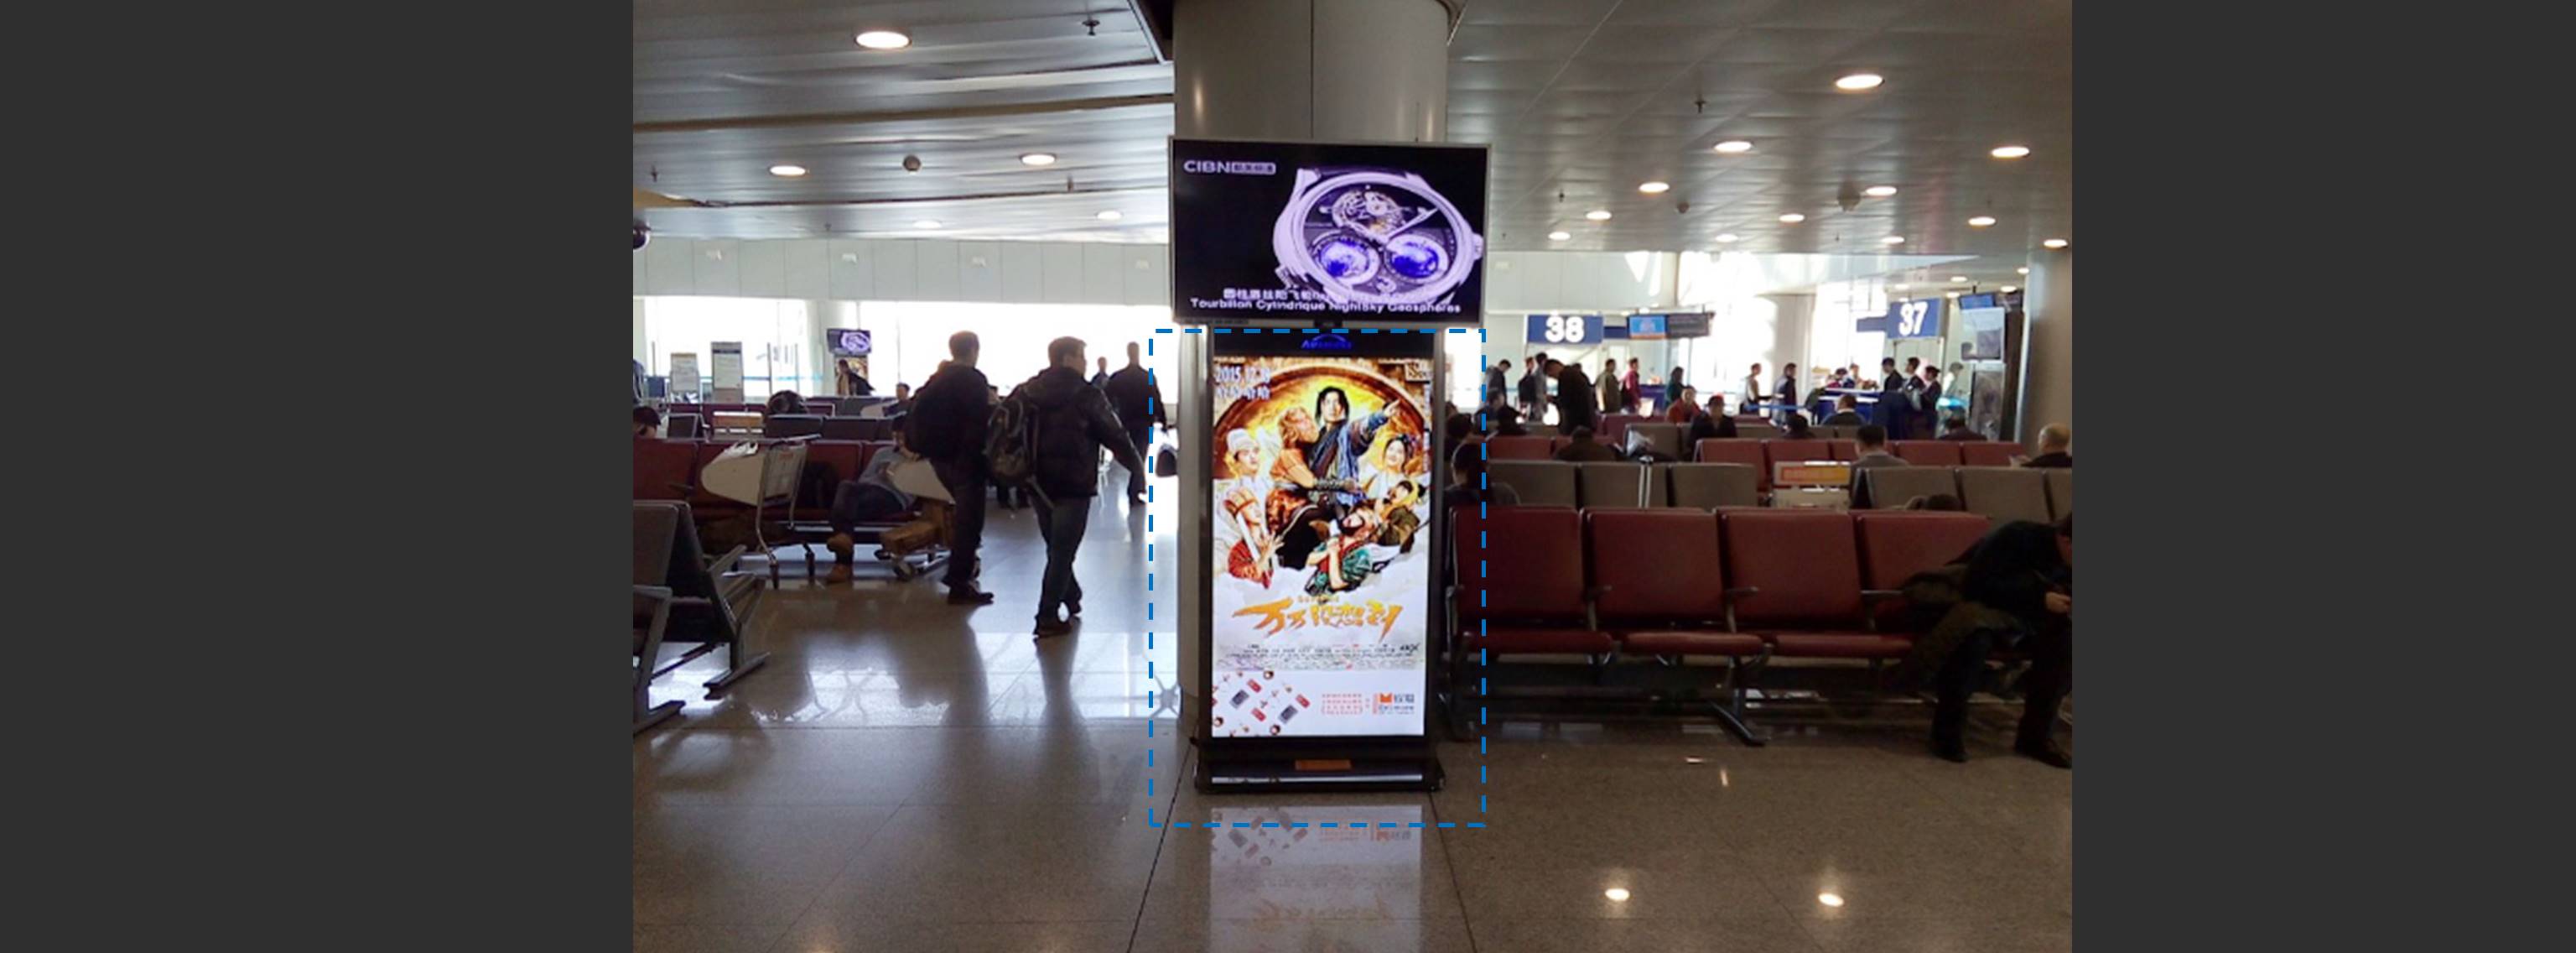 杭州萧山机场广告-T1、T2、T3全场刷屏